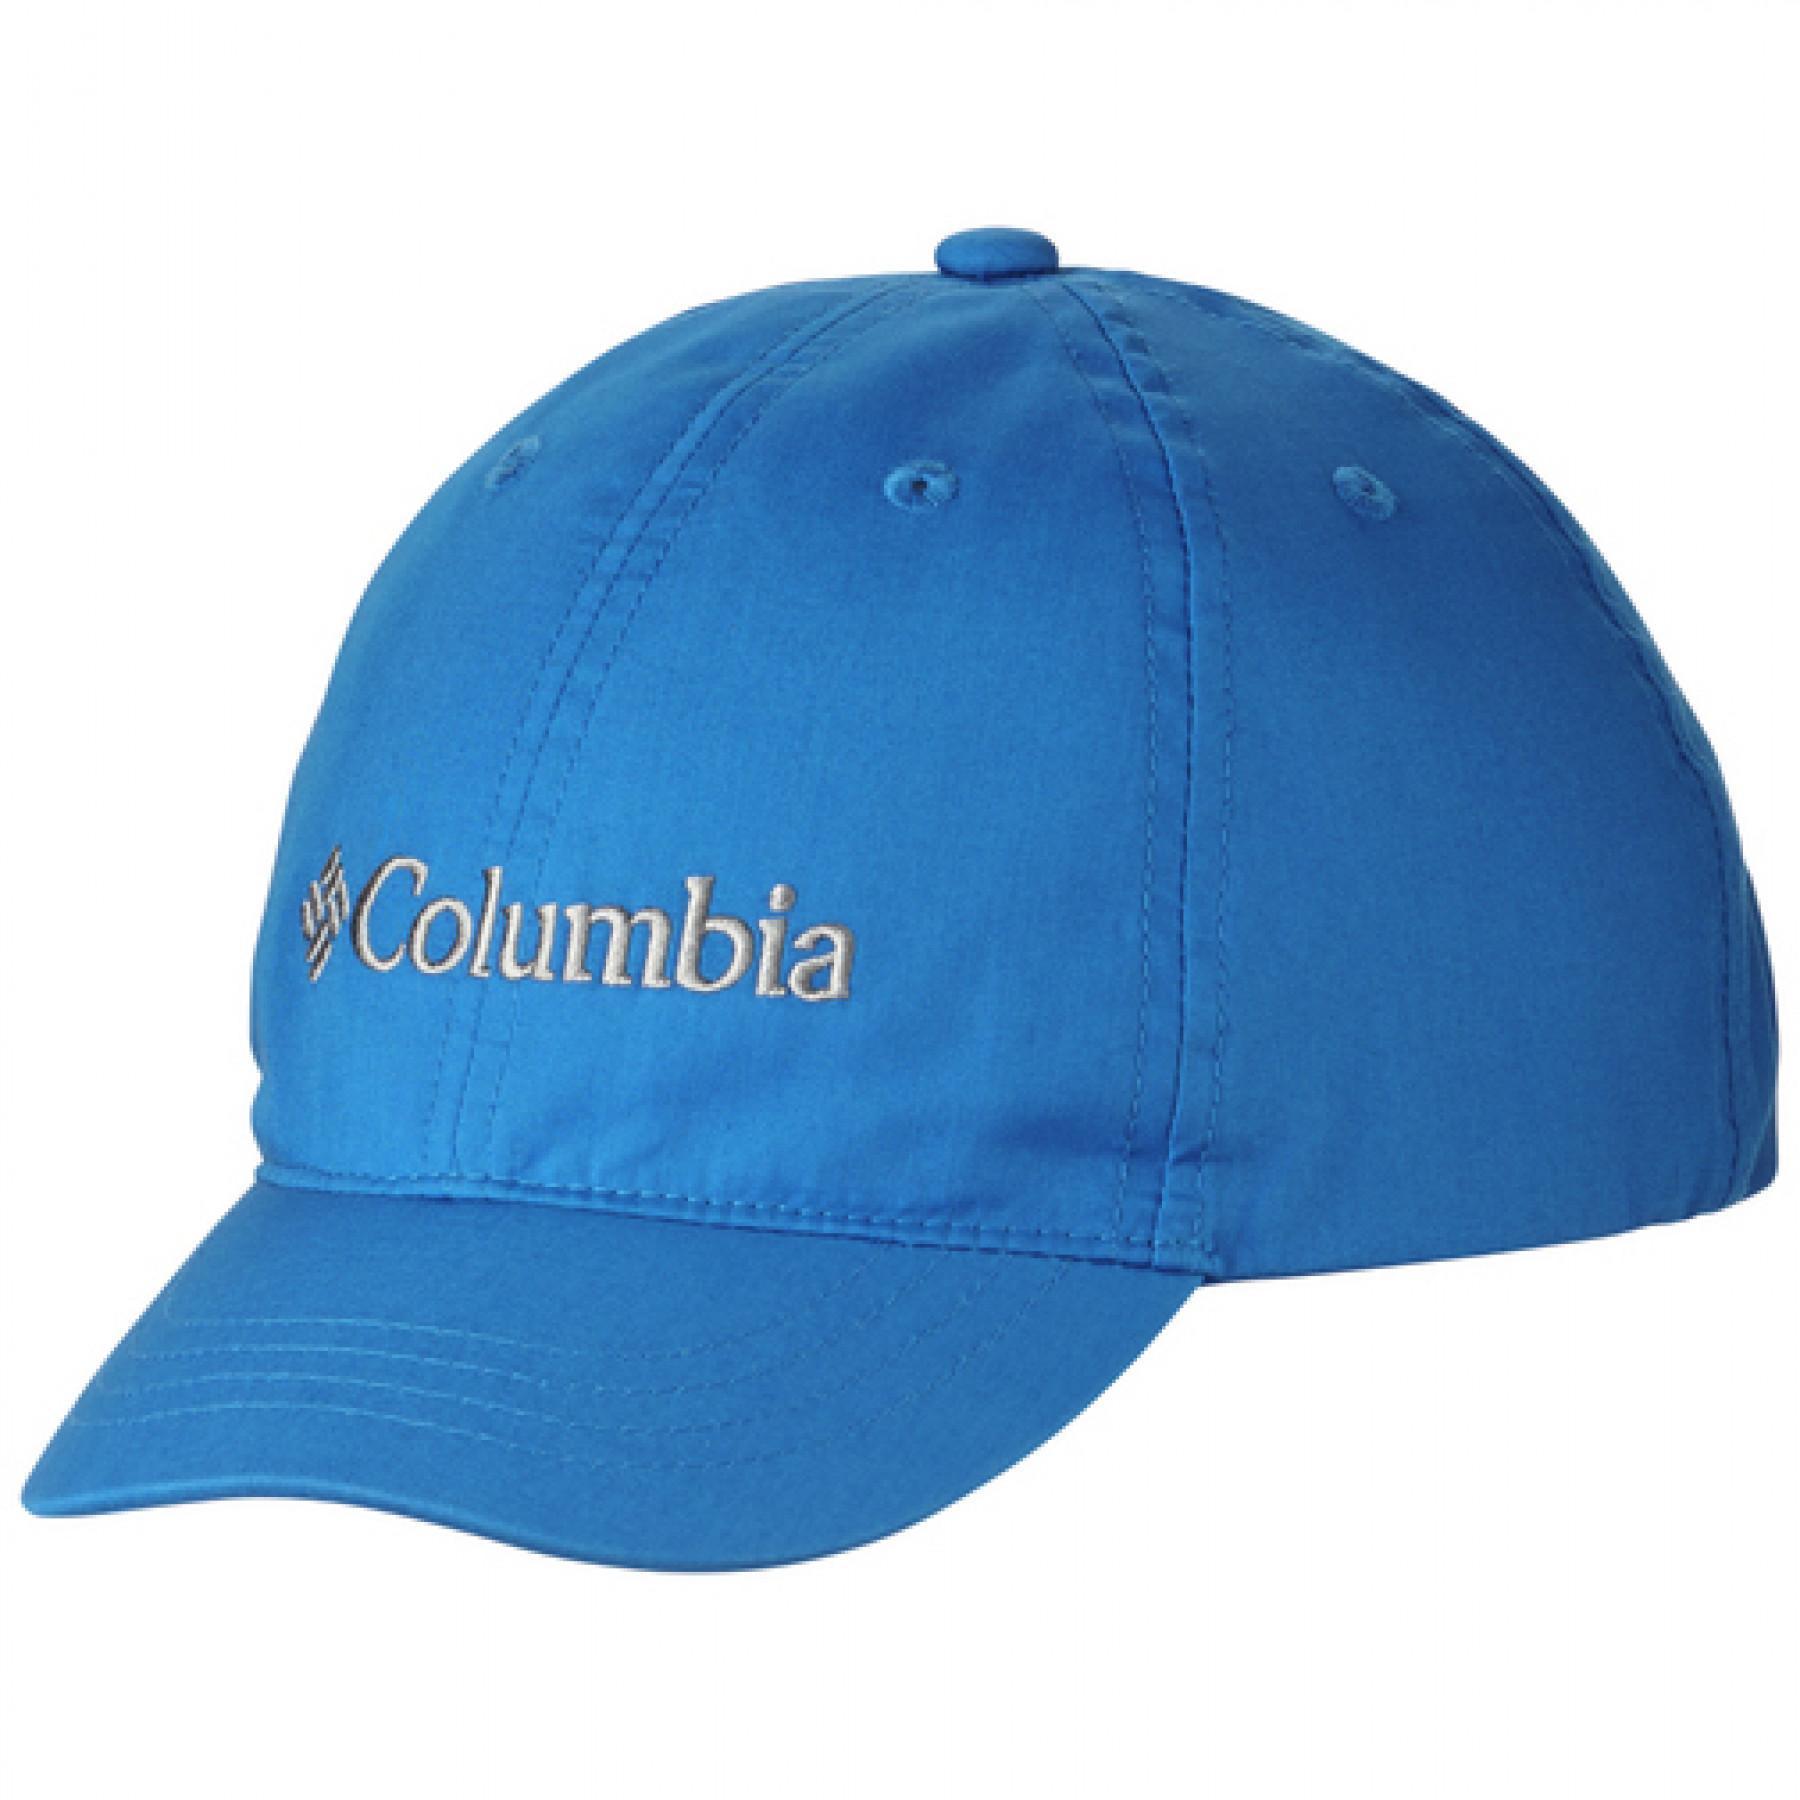 Children's cap Columbia Adjustable Ball